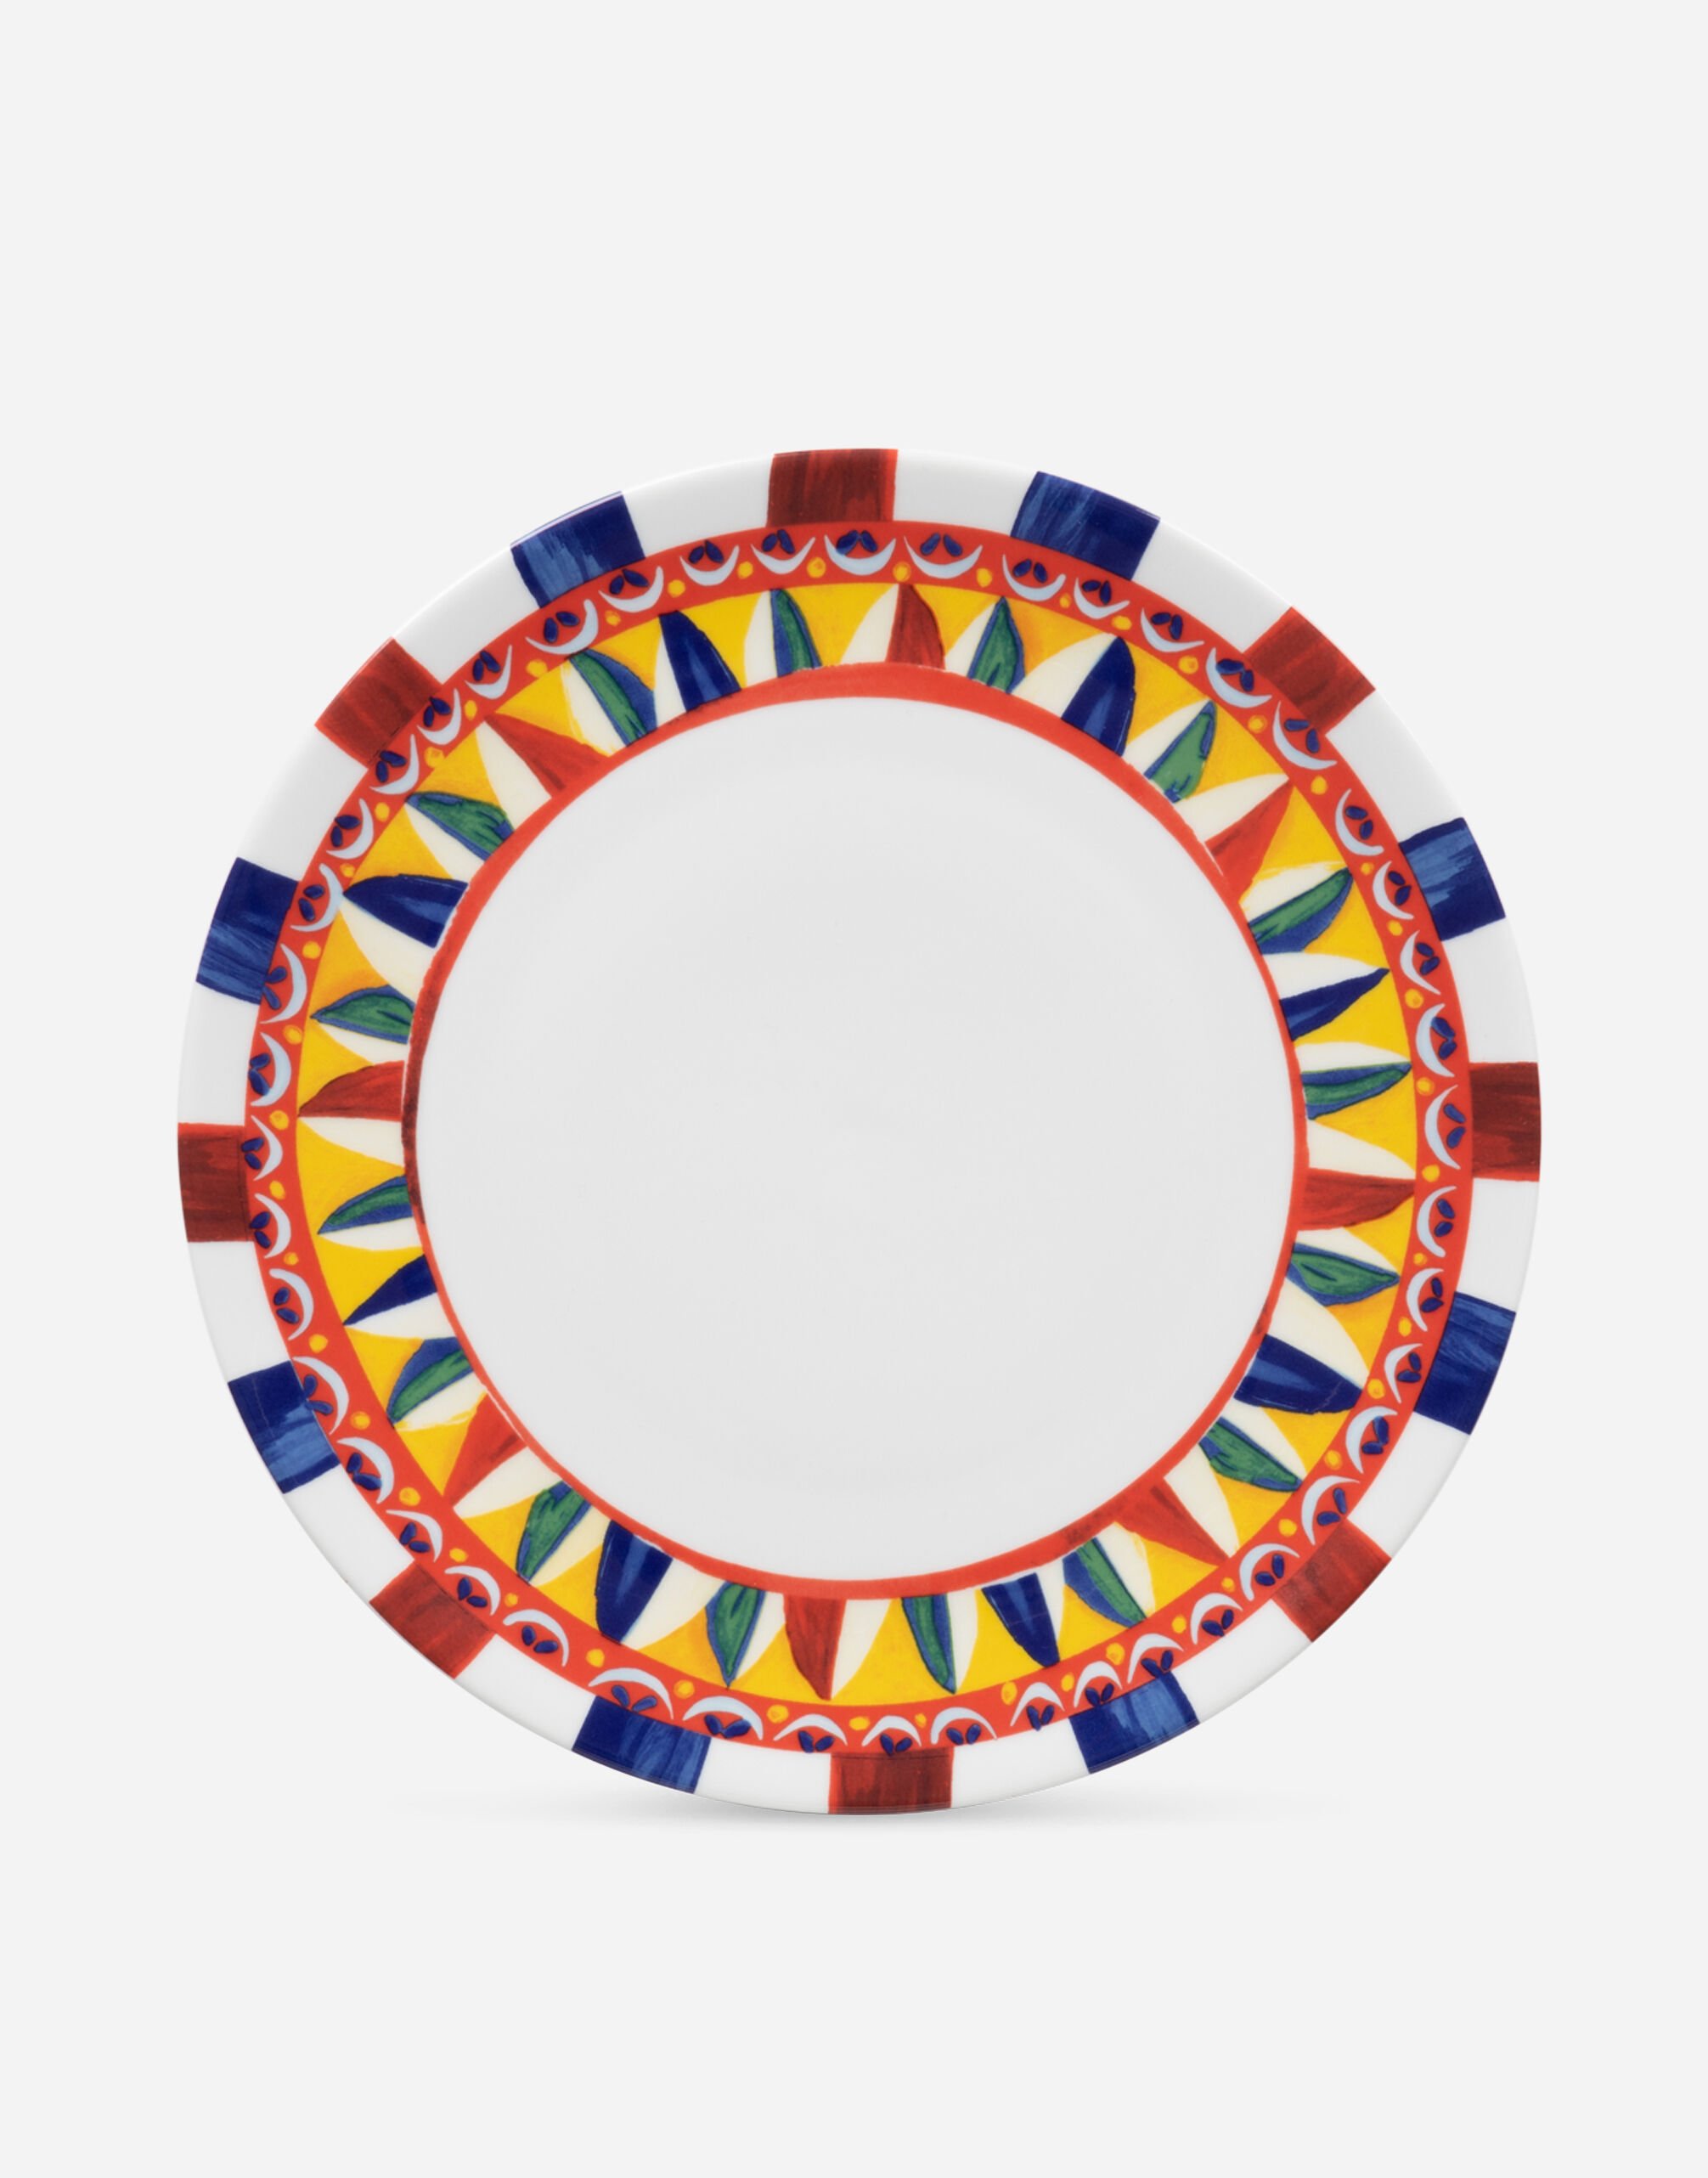 Dolce & Gabbana Bajoplato de porcelana Multicolore TC0085TCA48